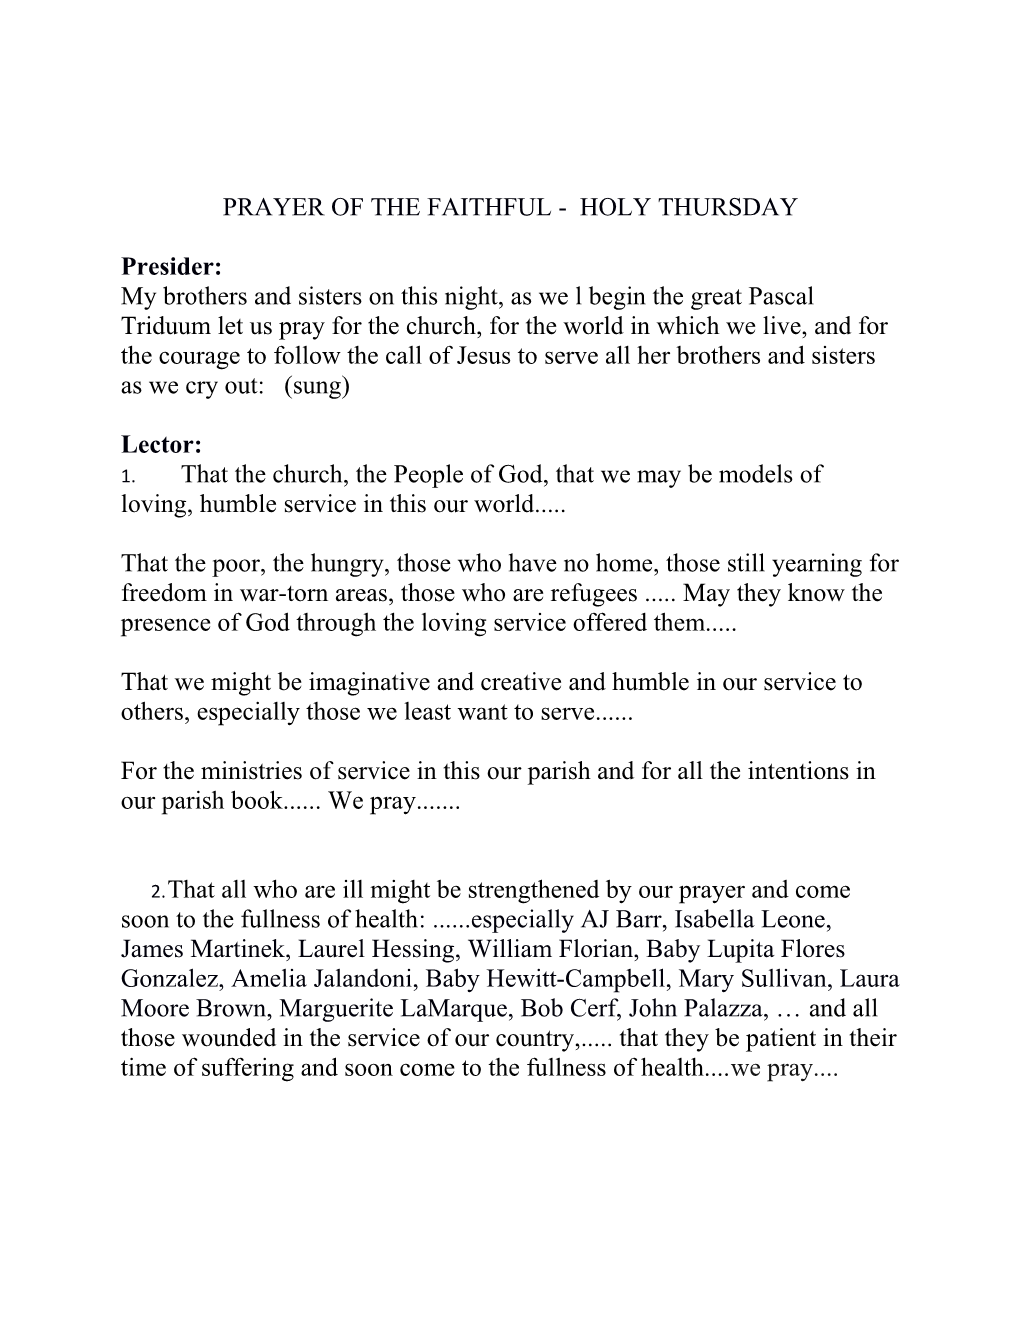 Prayer of the Faithful - Holy Thursday